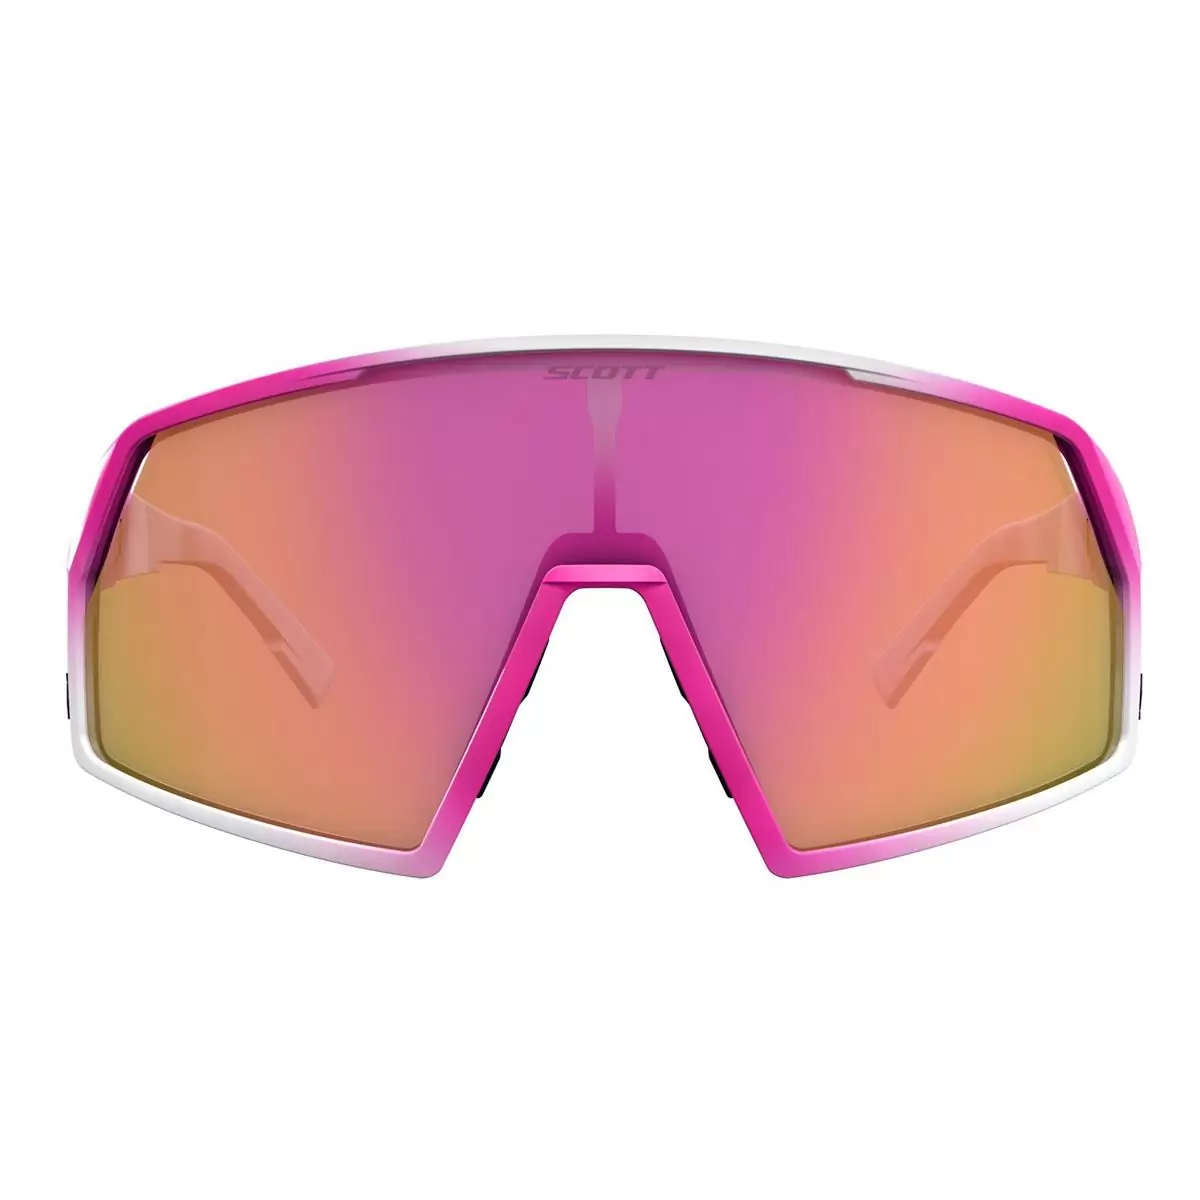 Scott Classic Goggles | Goggles, Ski goggles, Oakley sunglasses-hangkhonggiare.com.vn